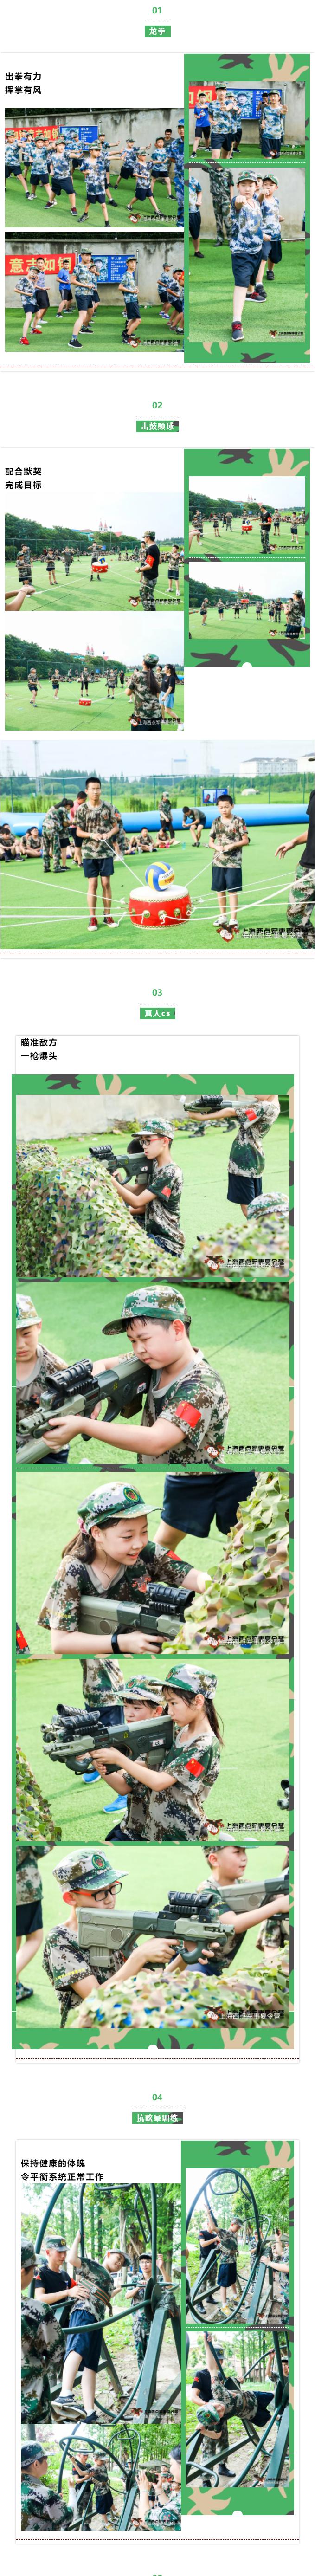 上海西点军事夏令营精彩图片回顾及活动照片